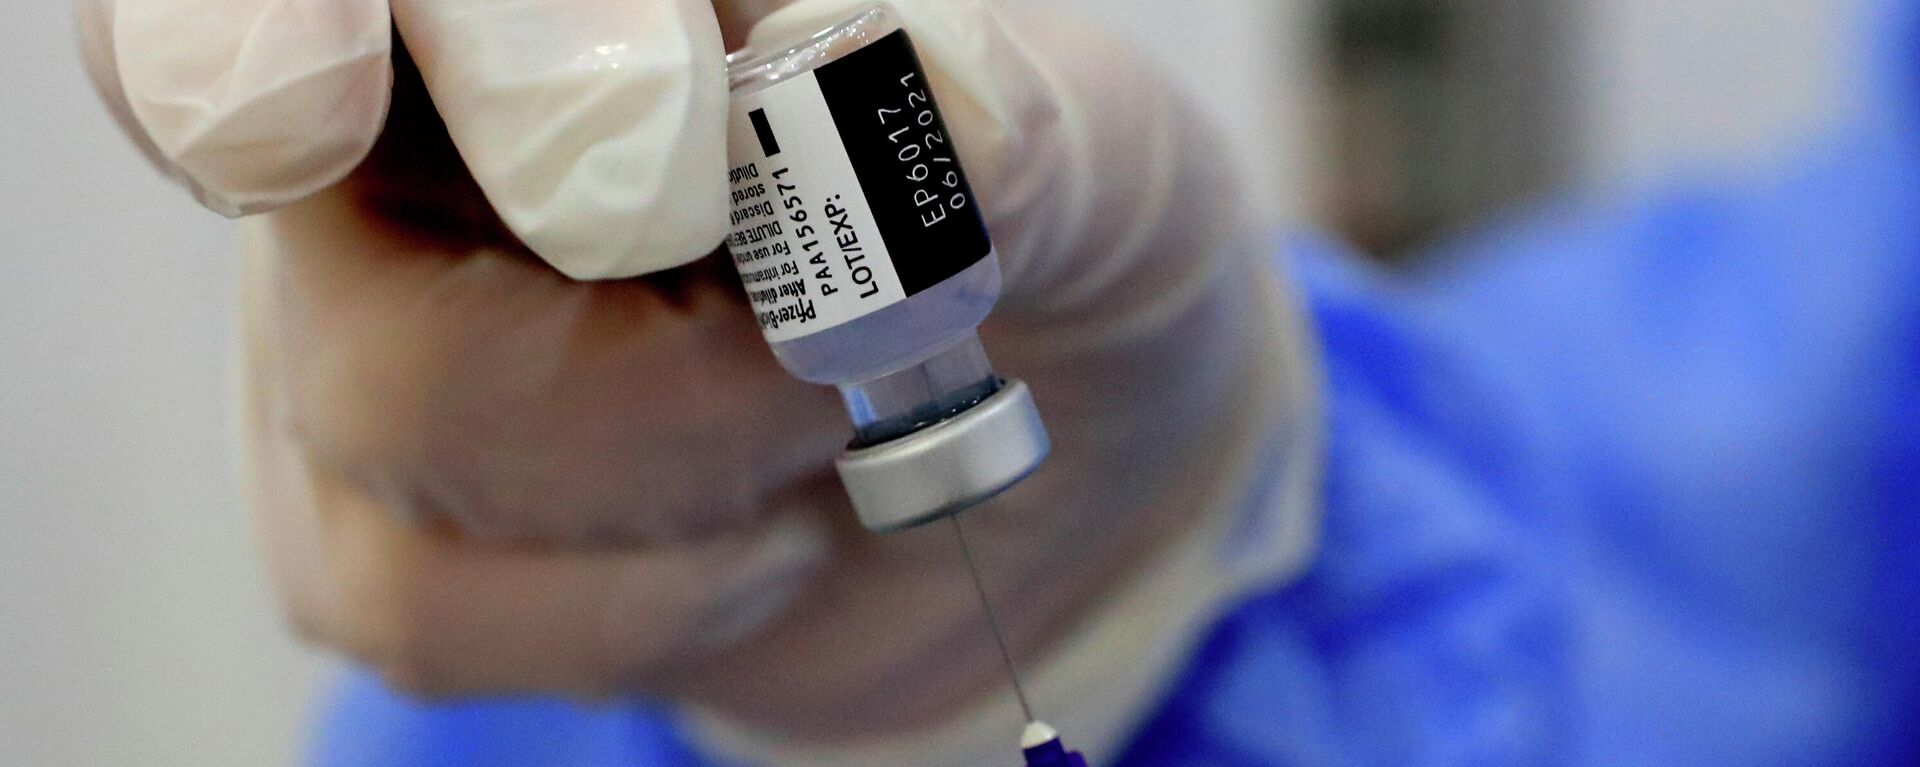 Una enfermera prepara una jeringa de la vacuna contra el coronavirus de Pfizer-BioNTech COVID-19 durante una campaña de vacunación en Beirut, Líbano, 16 de febrero de 2021. - Sputnik Mundo, 1920, 19.04.2021